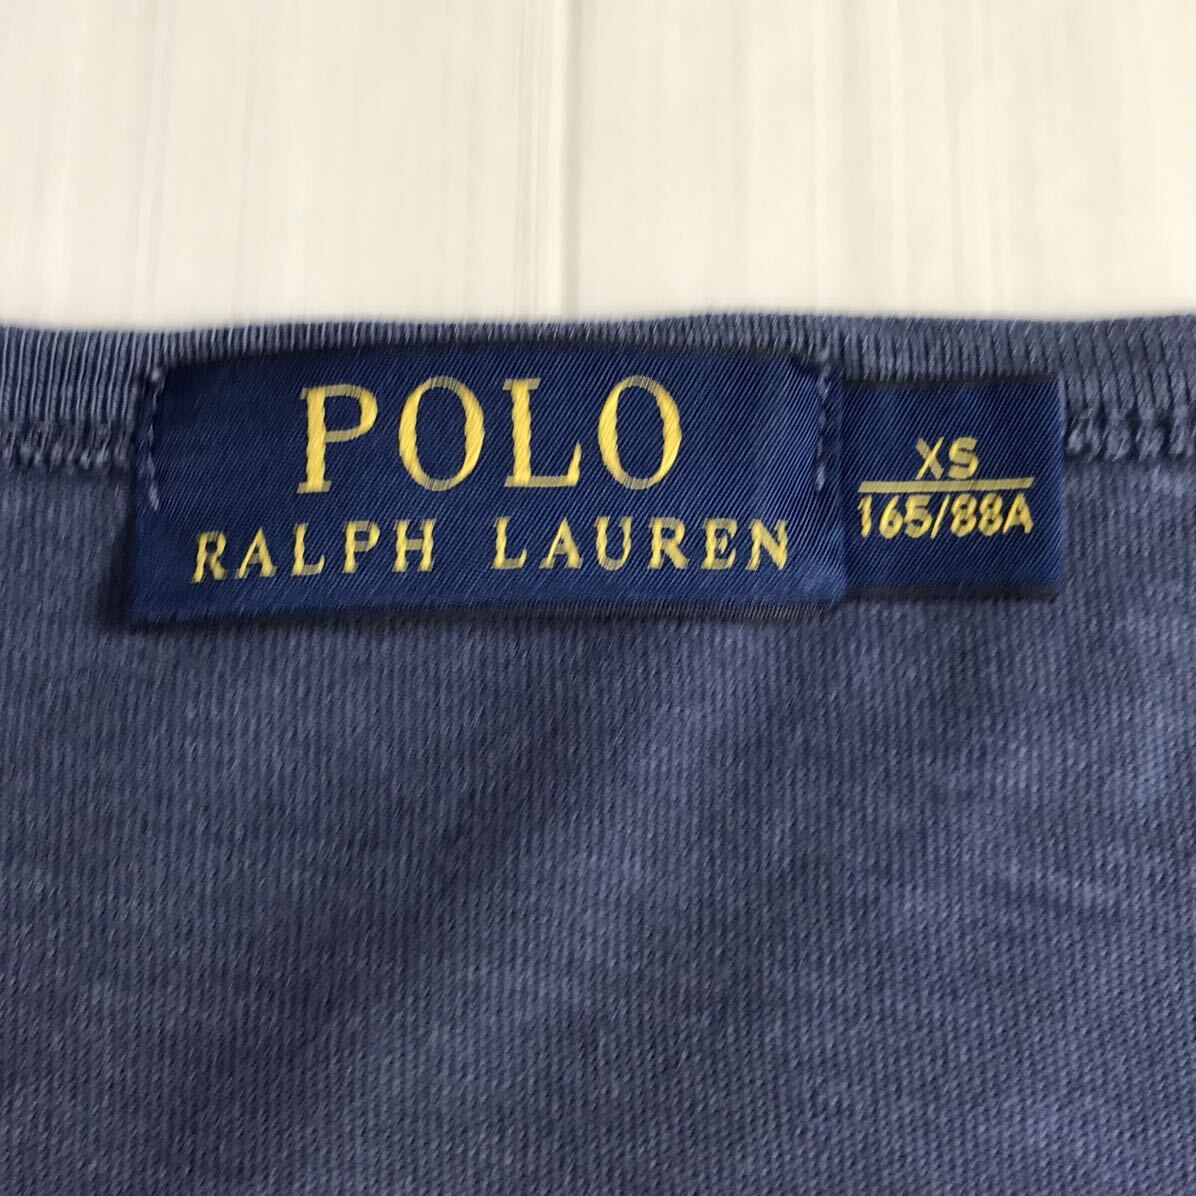 POLO RALPH LAUREN ポロ ラルフローレン 半袖Tシャツ XS(165/88A) ネイビー ビッグロゴ プリントTシャツ ユースサイズ ロゴタグ_画像6